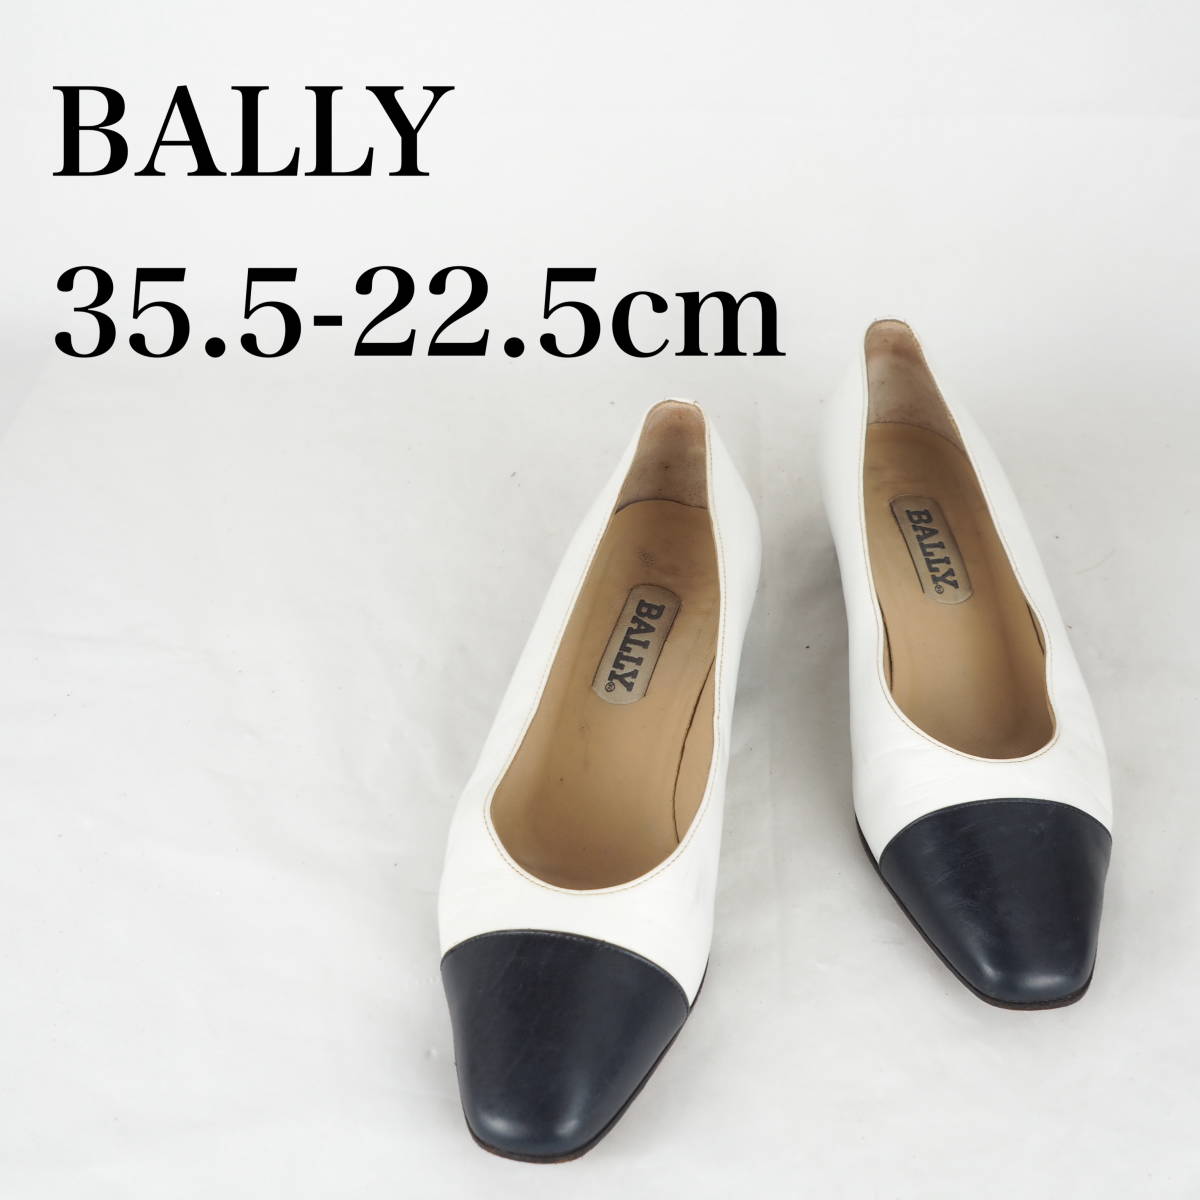 MK1639*BALLY* Bally * женский туфли-лодочки *35-22.5cm* белый, чёрный 